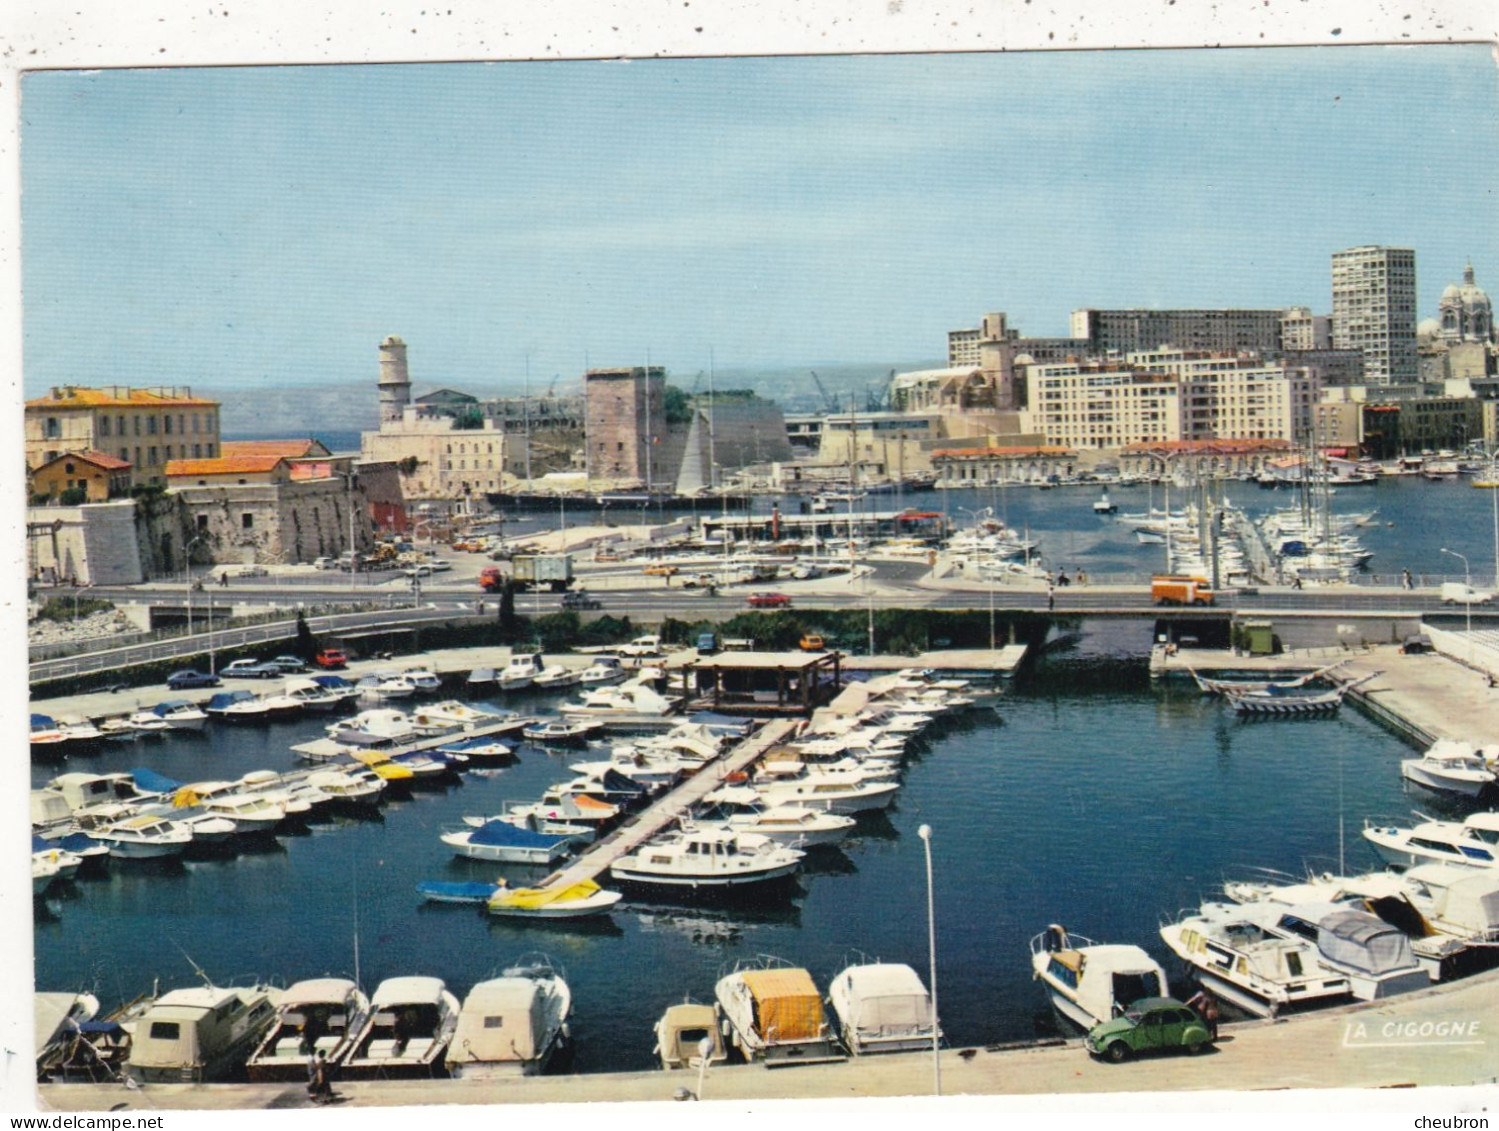 13.  MARSEILLE. CPSM. LE BASSIN DU CARENAGE ET LE VIEUX PORT..  ANNEE 1979+ TEXTE - Alter Hafen (Vieux Port), Saint-Victor, Le Panier